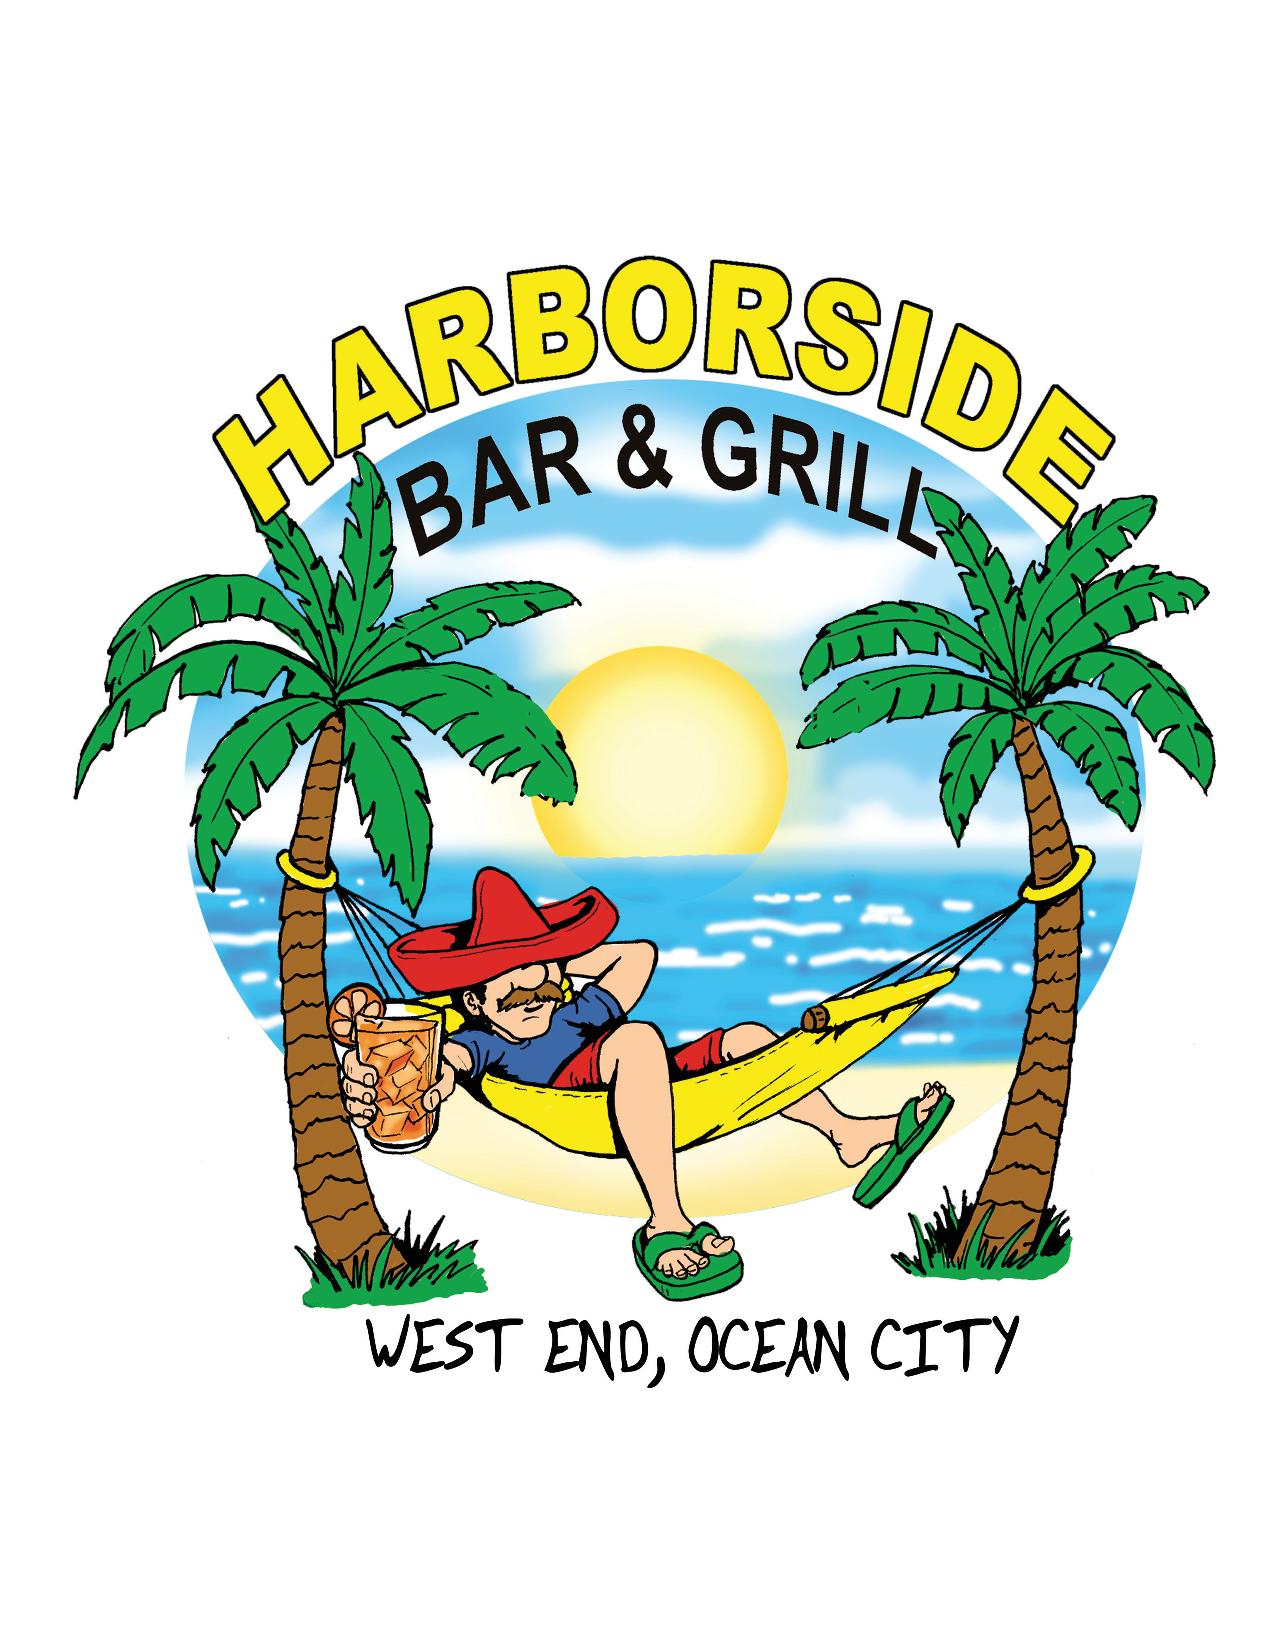 Harborside logo